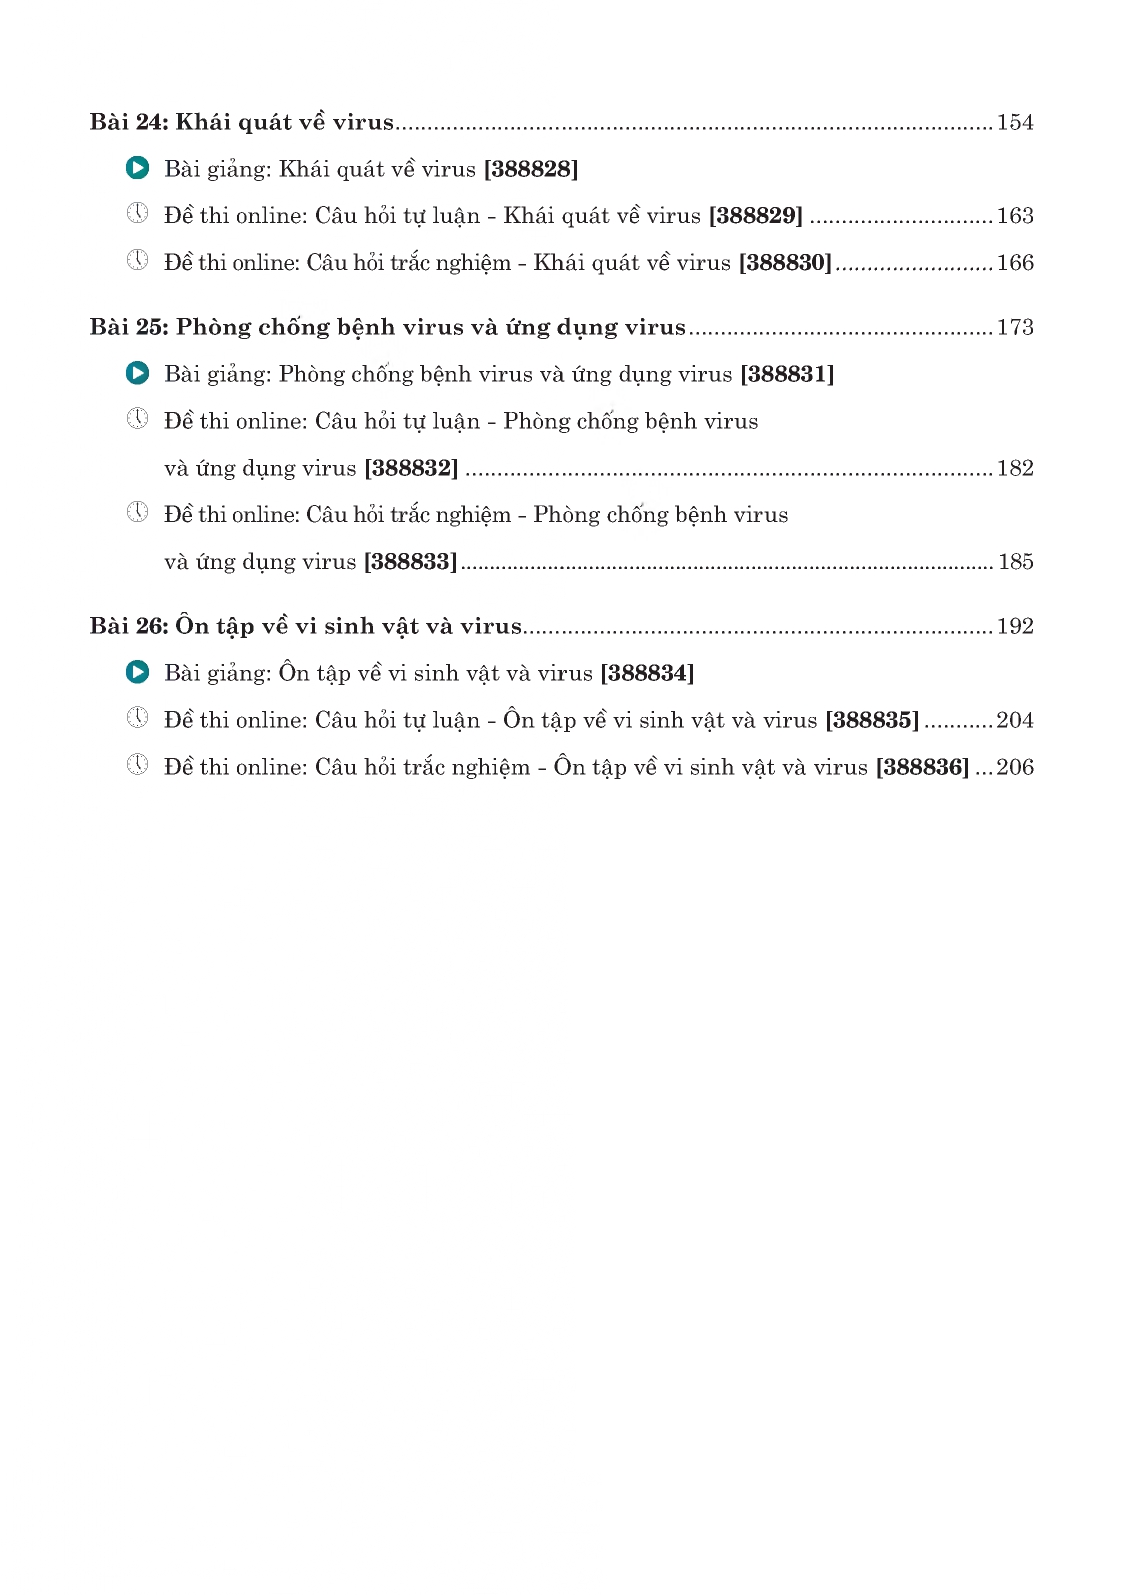 TỰ HỌC SINH HỌC LỚP 10 - TẬP 2 (Tài liệu dùng để bồi dưỡng học sinh giỏi - Sử dụng cho các bộ SGK hiện hành)